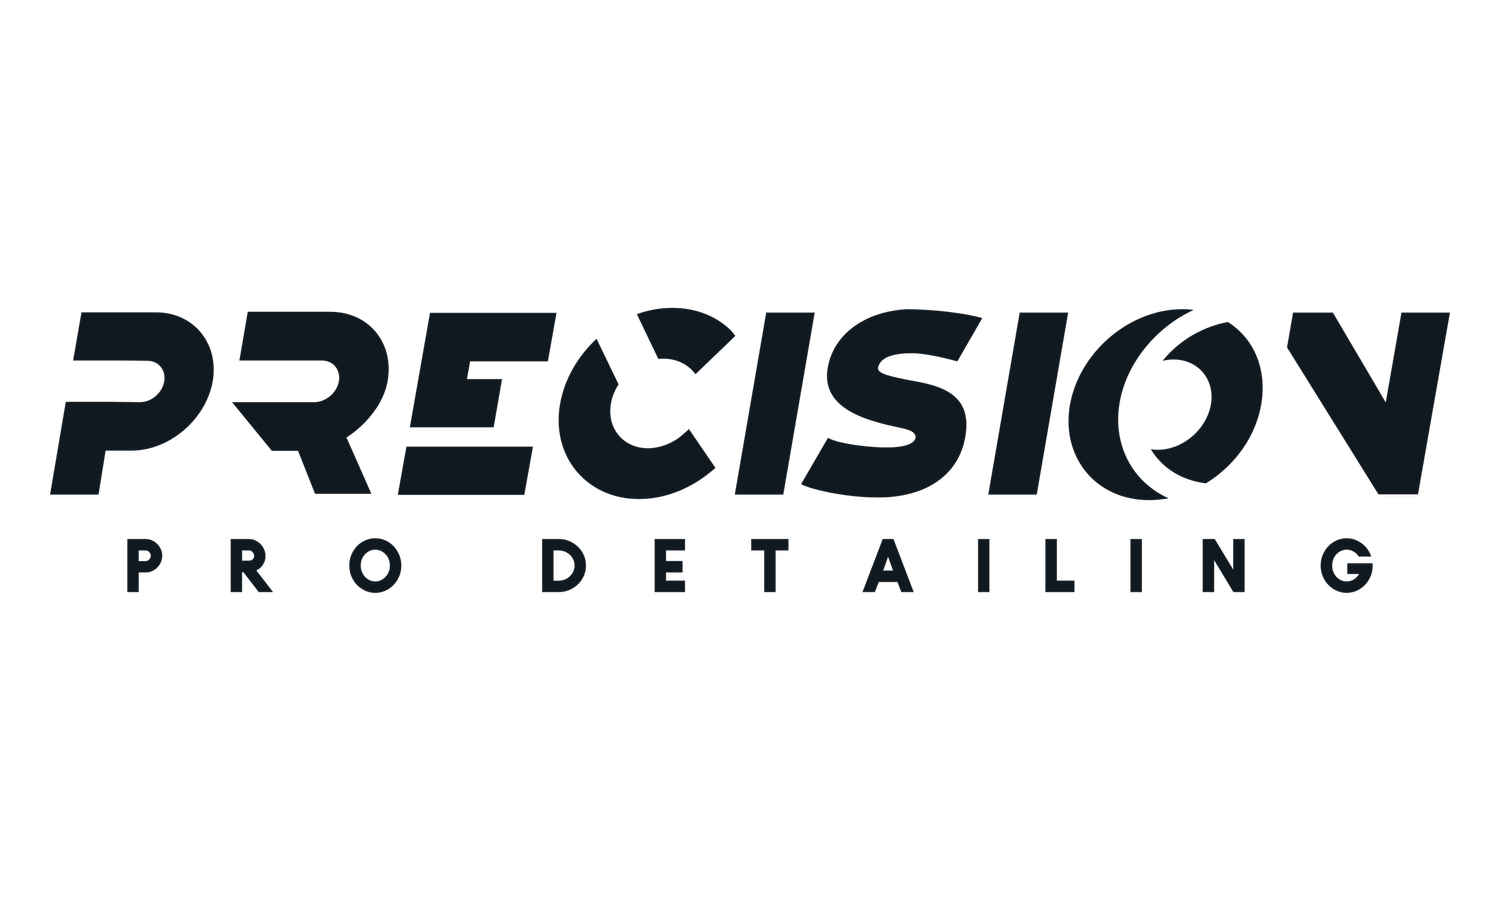 Precision Pro Detailing - New Minas 